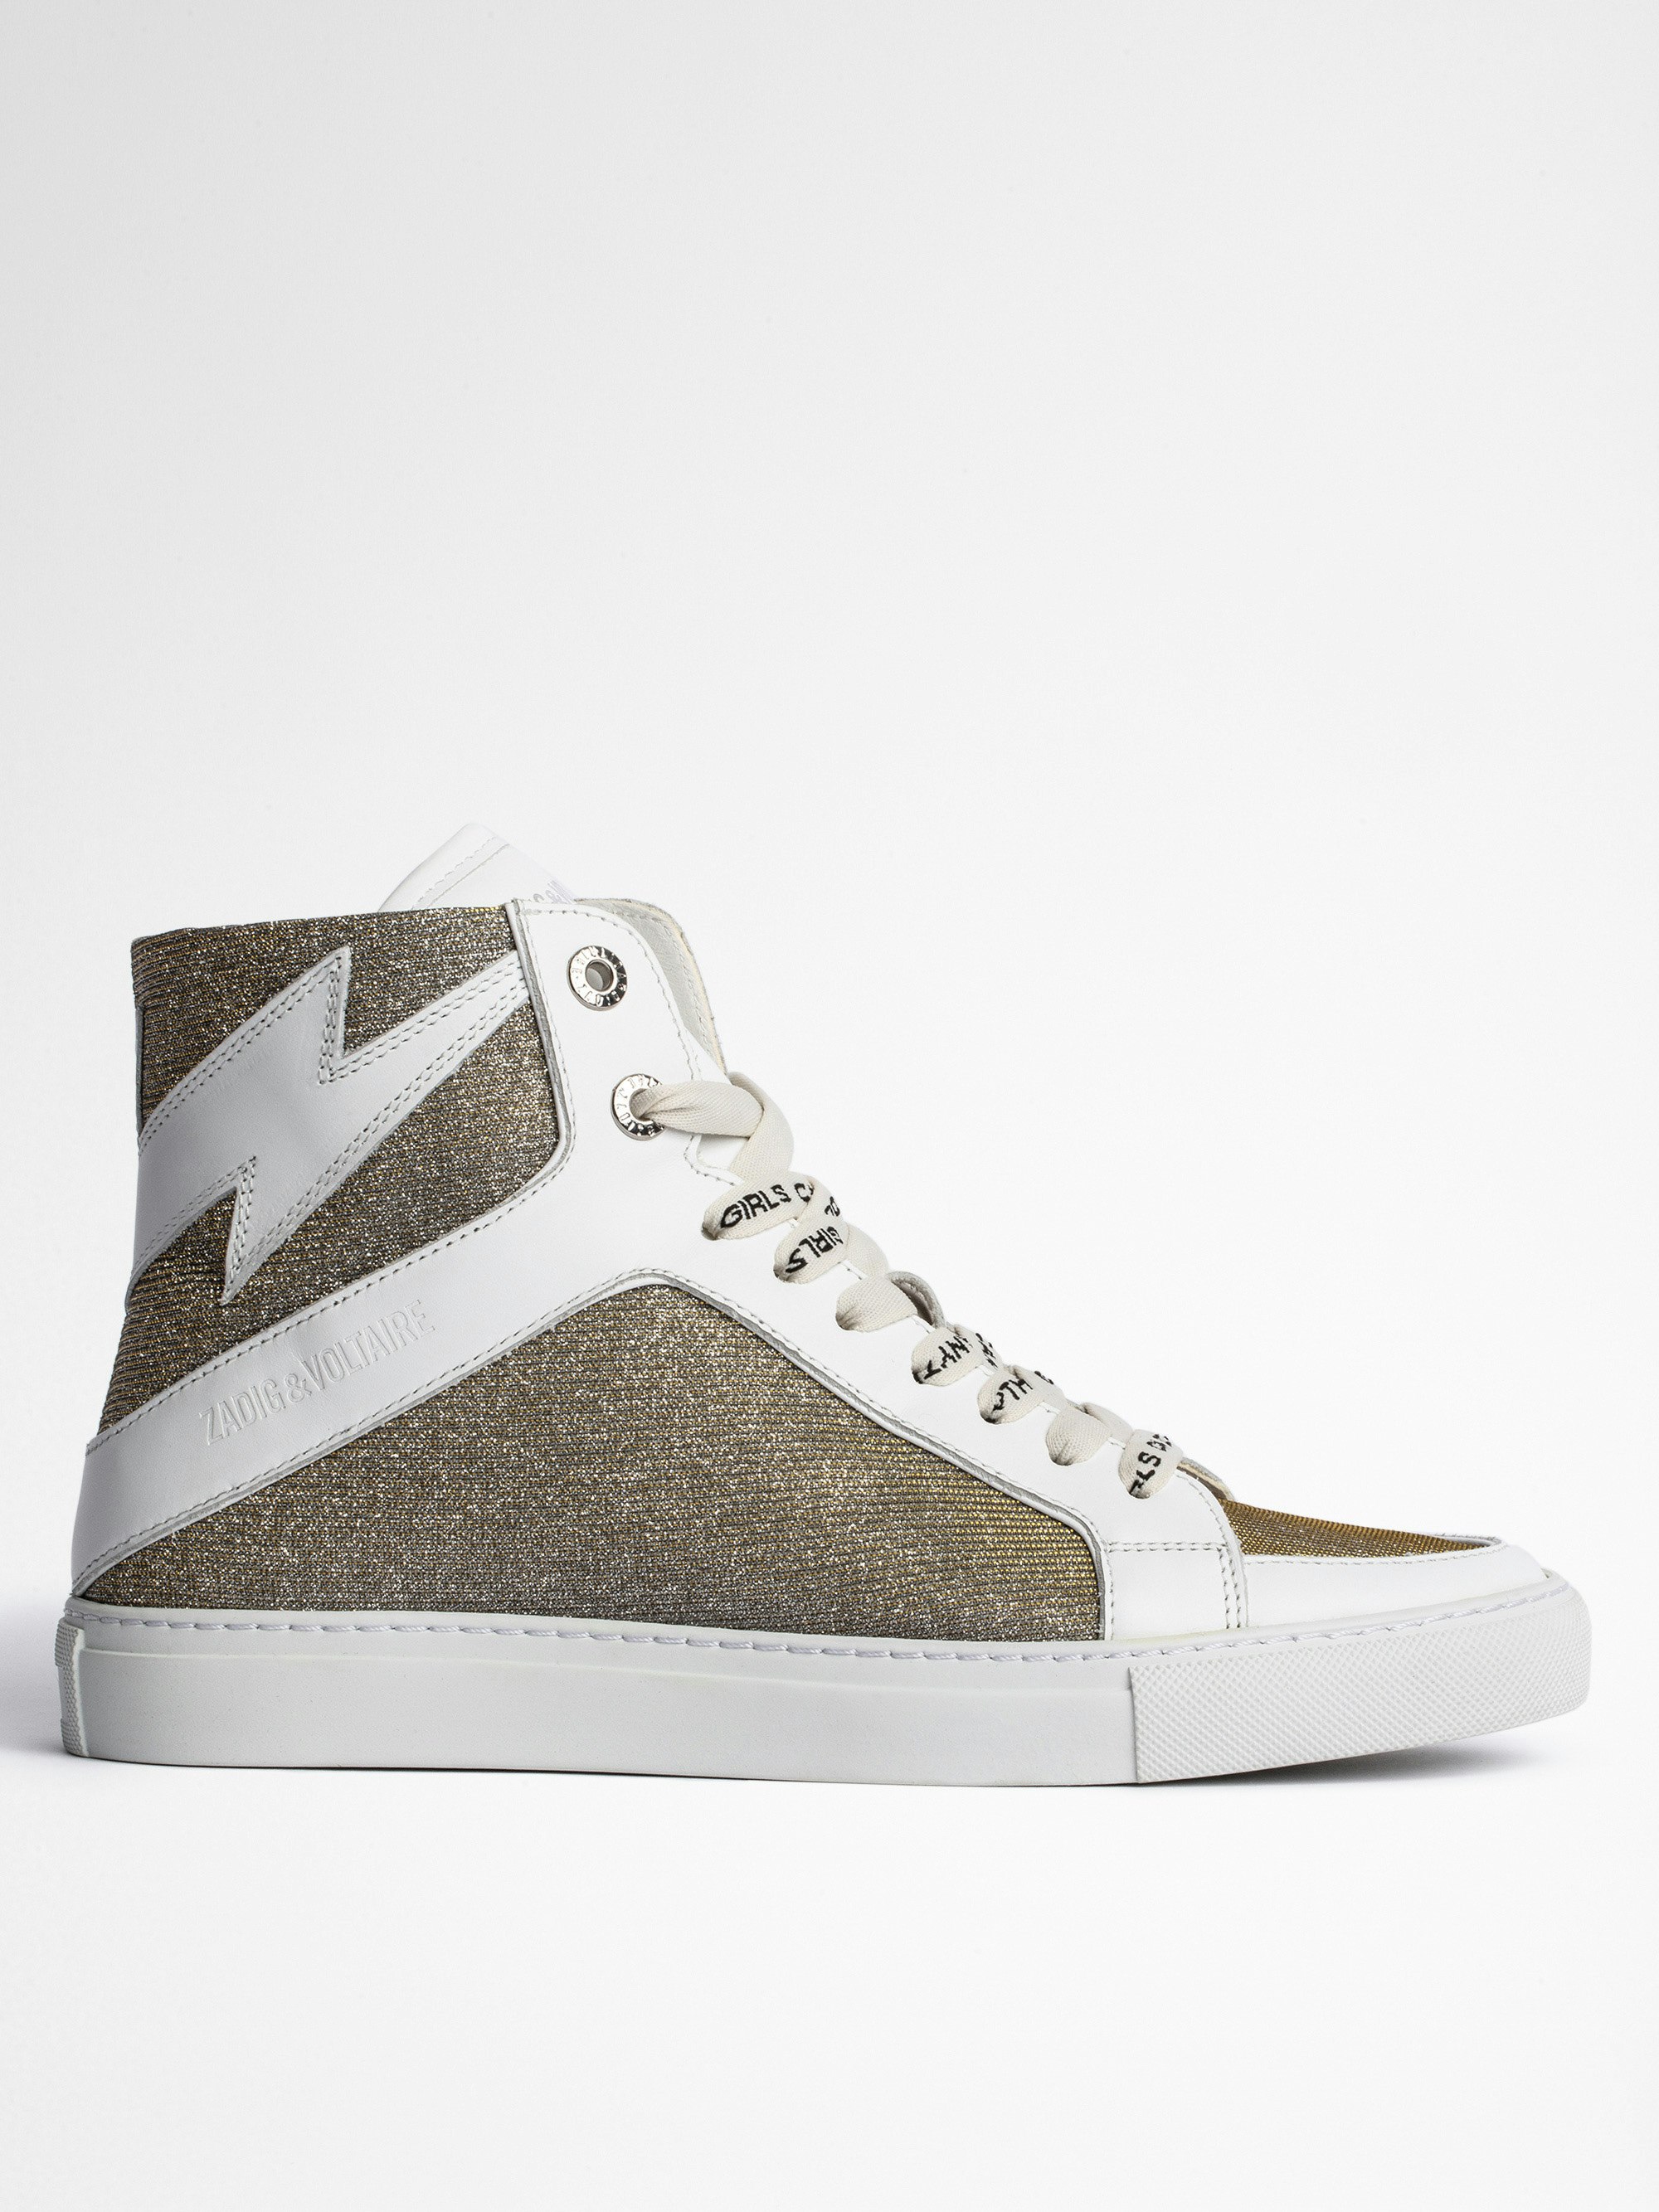 Sneaker ZV1747 High Flash - Sneakers alte in pelle liscia bianca e tessuto glitterato argento, donna